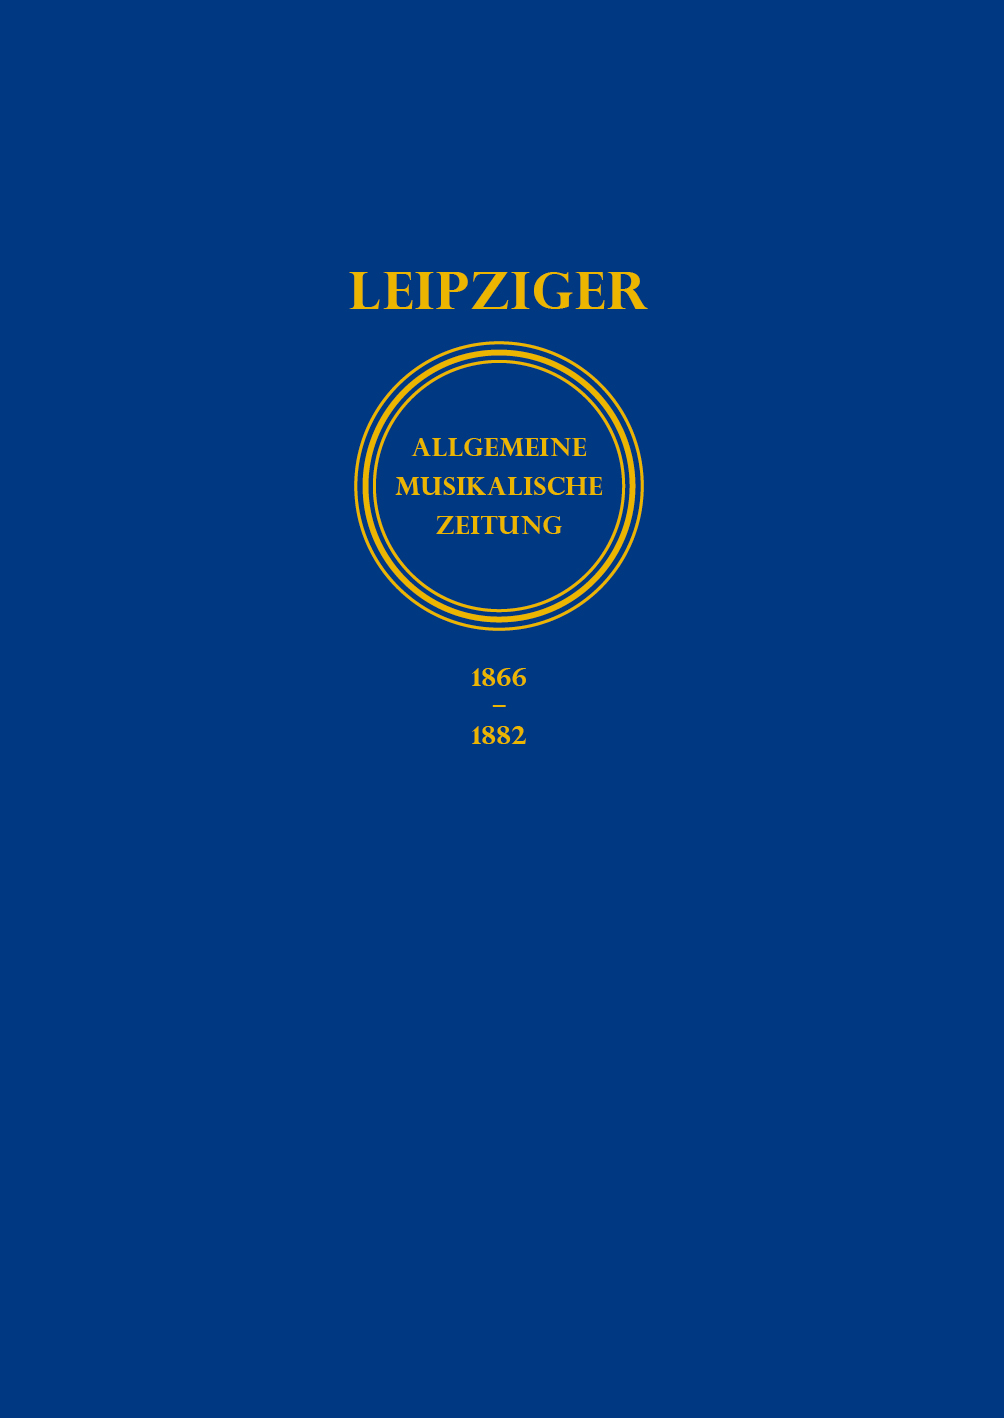 (Leipziger) Allgemeine musikalische Zeitung